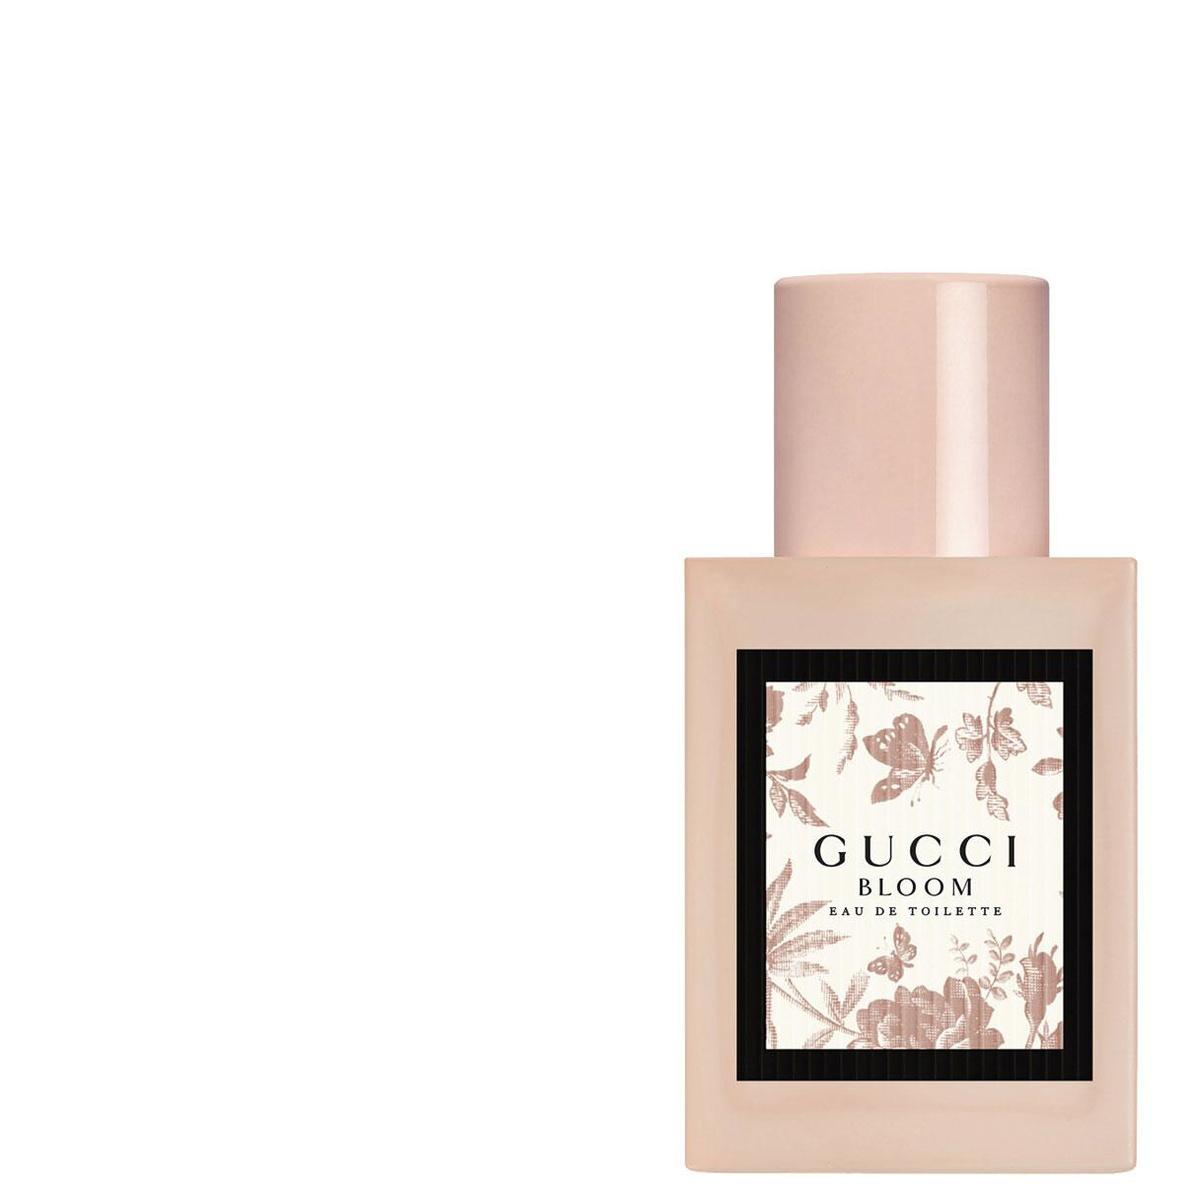 Een geur die doet denken aan een dromerige tuin vol witte bloemen, met een toets van honing en citroen. Eau de toilette Gucci Bloom van Gucci. 62 euro voor 30 ml, in de parfumerie.